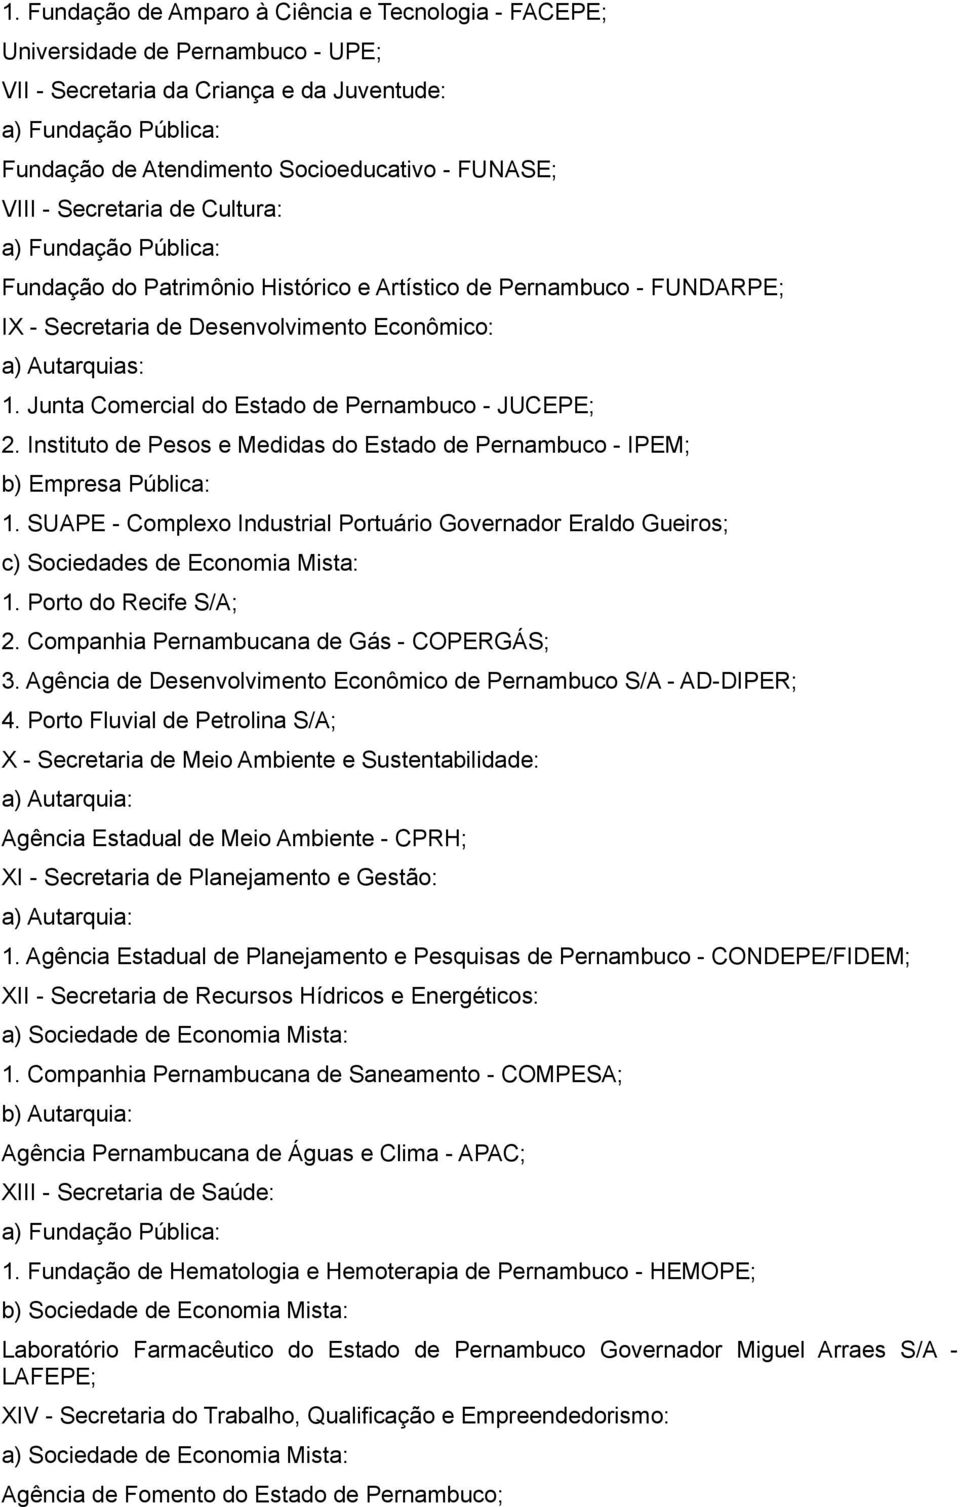 Junta Comercial do Estado de Pernambuco - JUCEPE; 2. Instituto de Pesos e Medidas do Estado de Pernambuco - IPEM; b) Empresa Pública: 1.